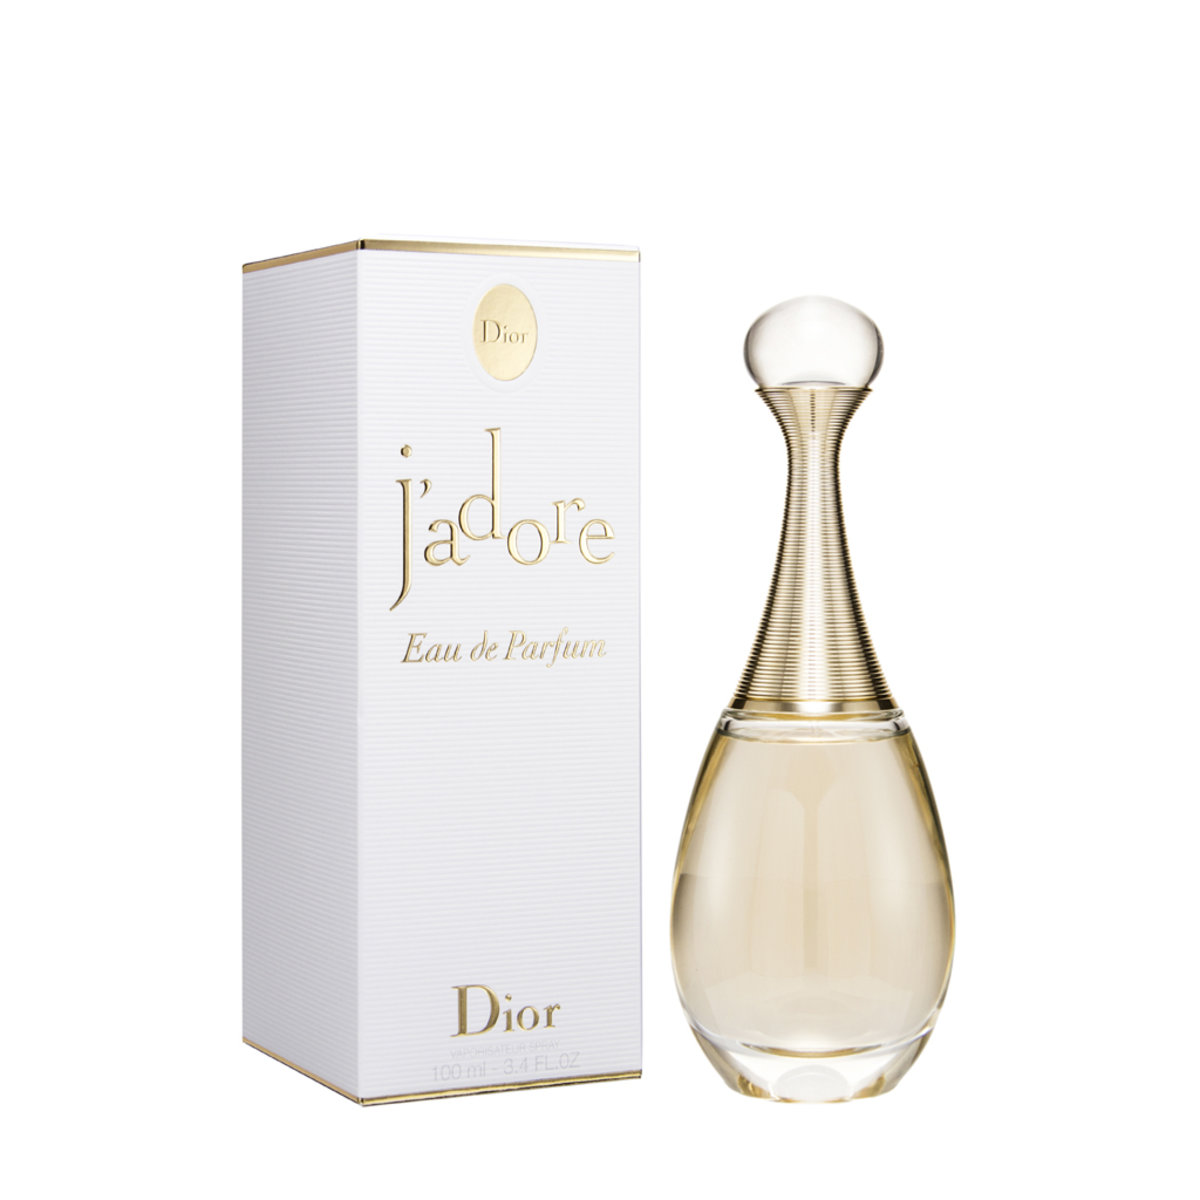 jadore perfume ingredients